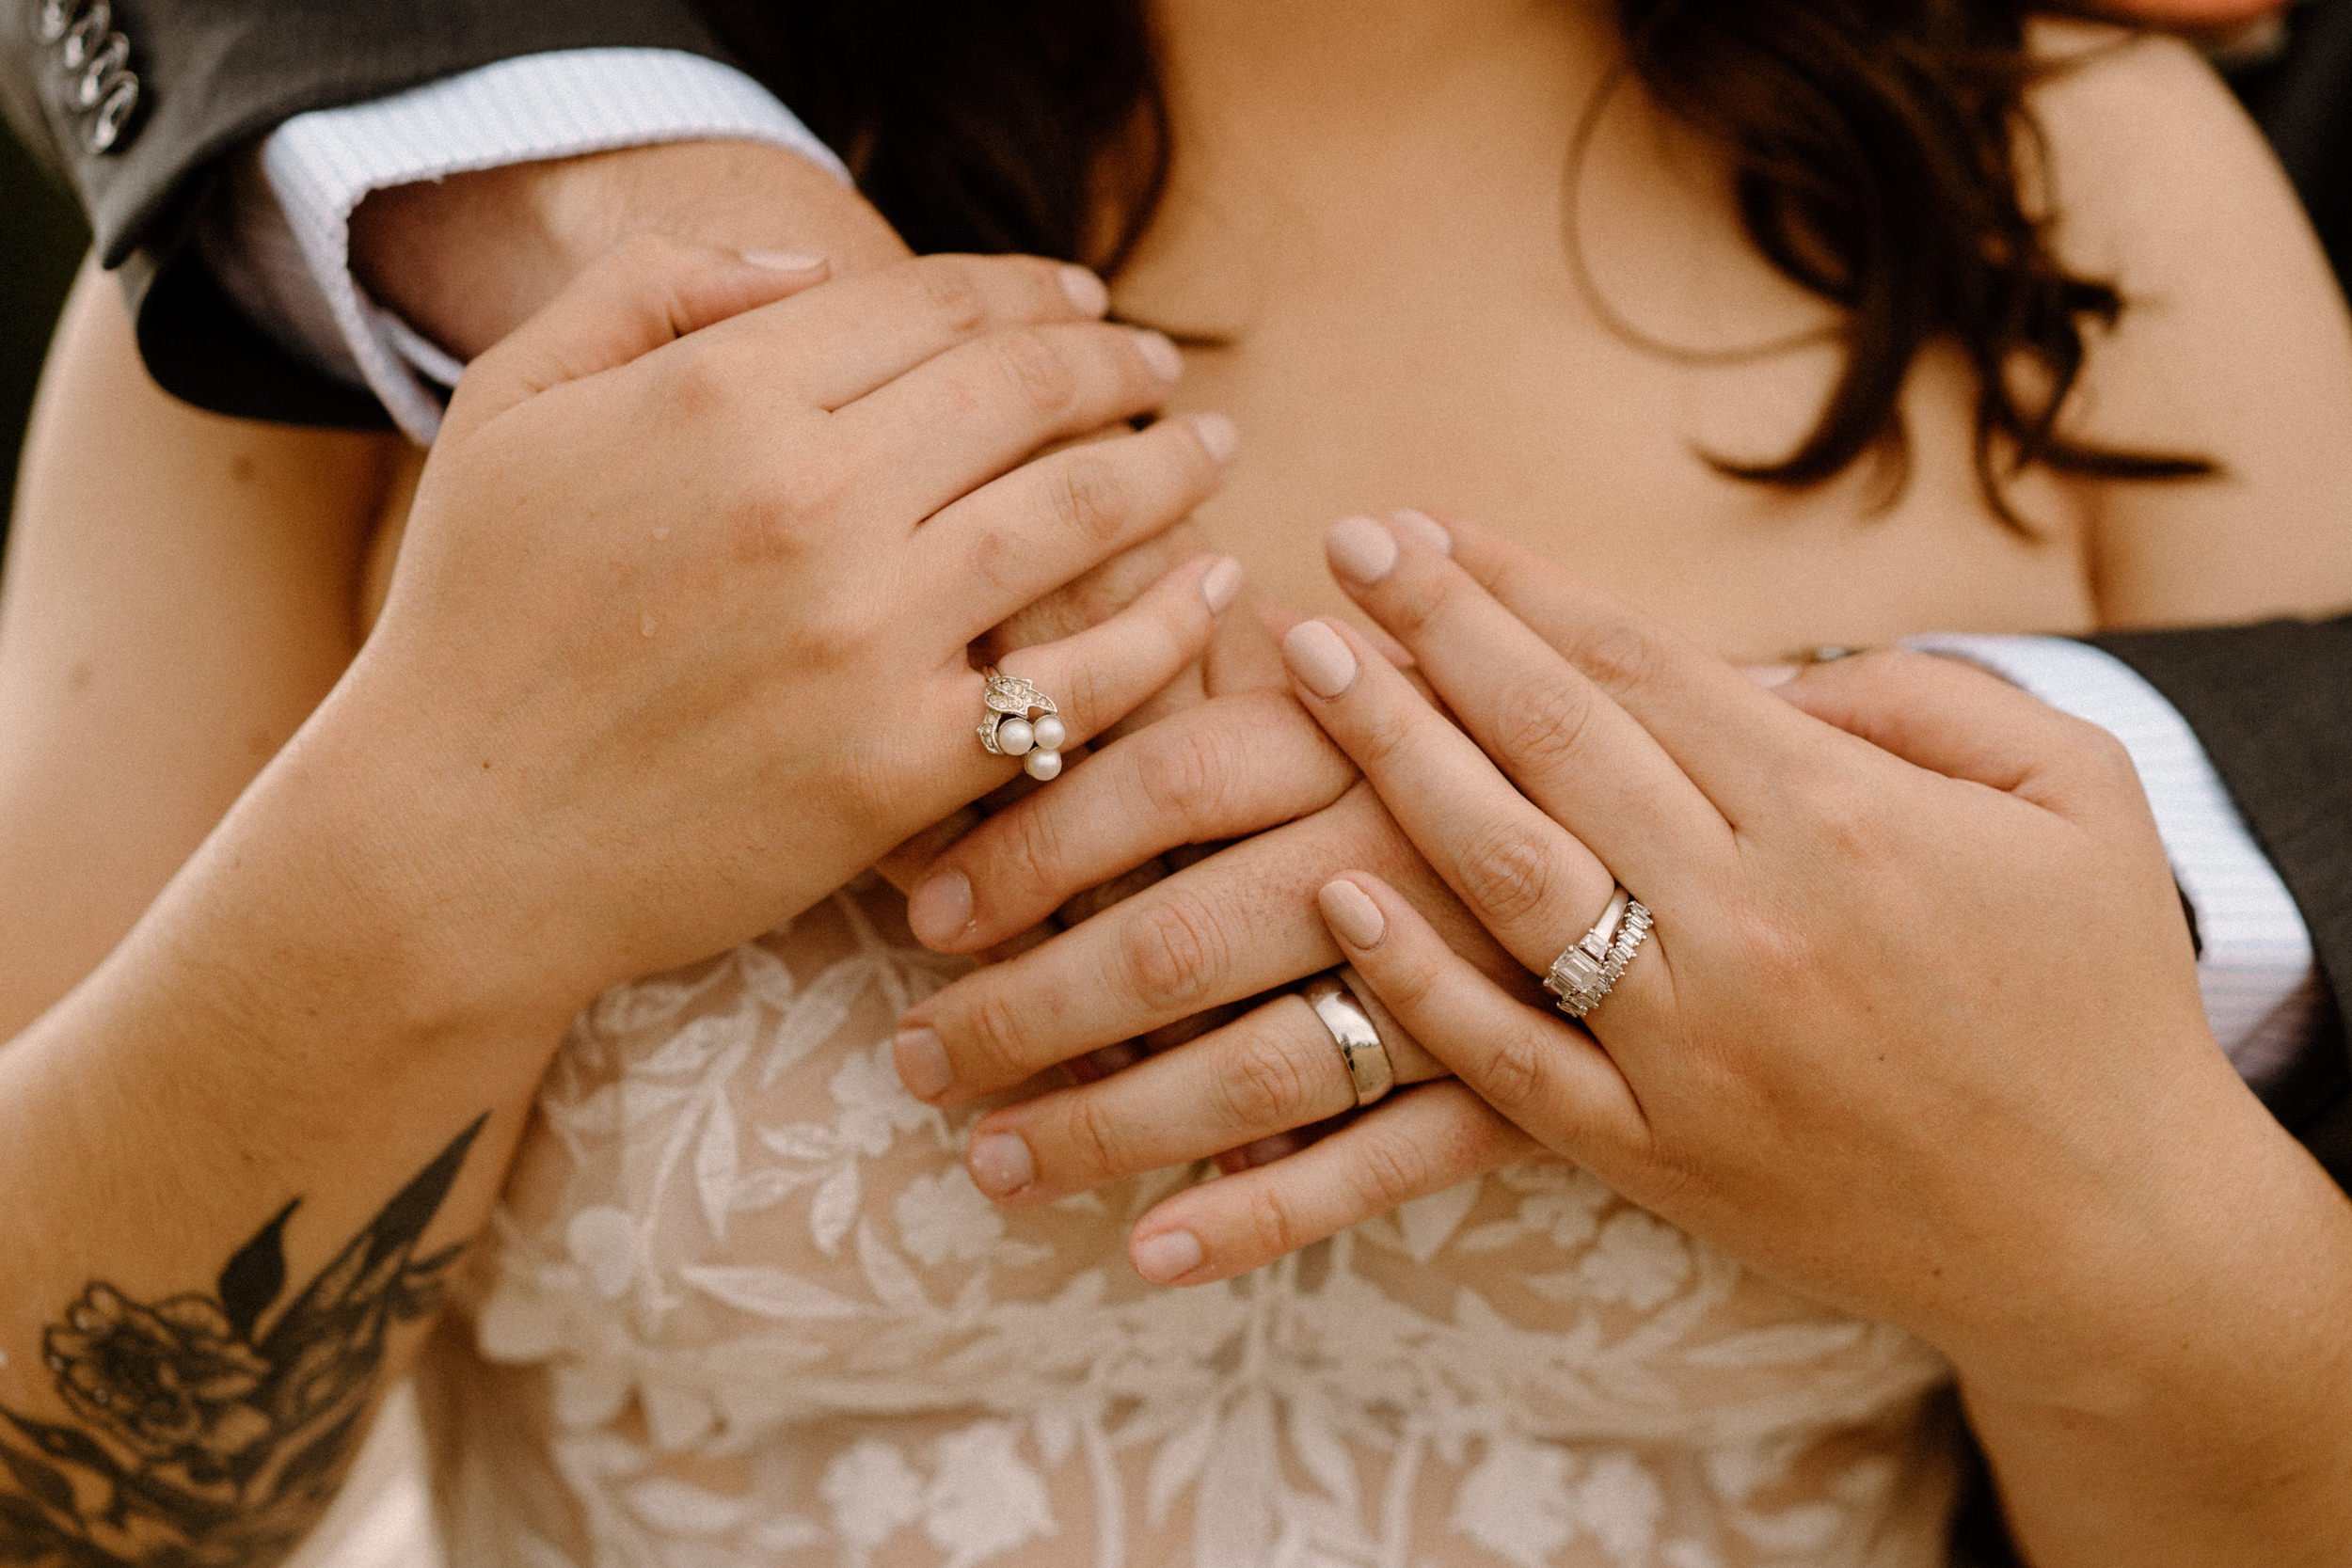 Groom hugs bride from behind, showcasing both of their wedding rings